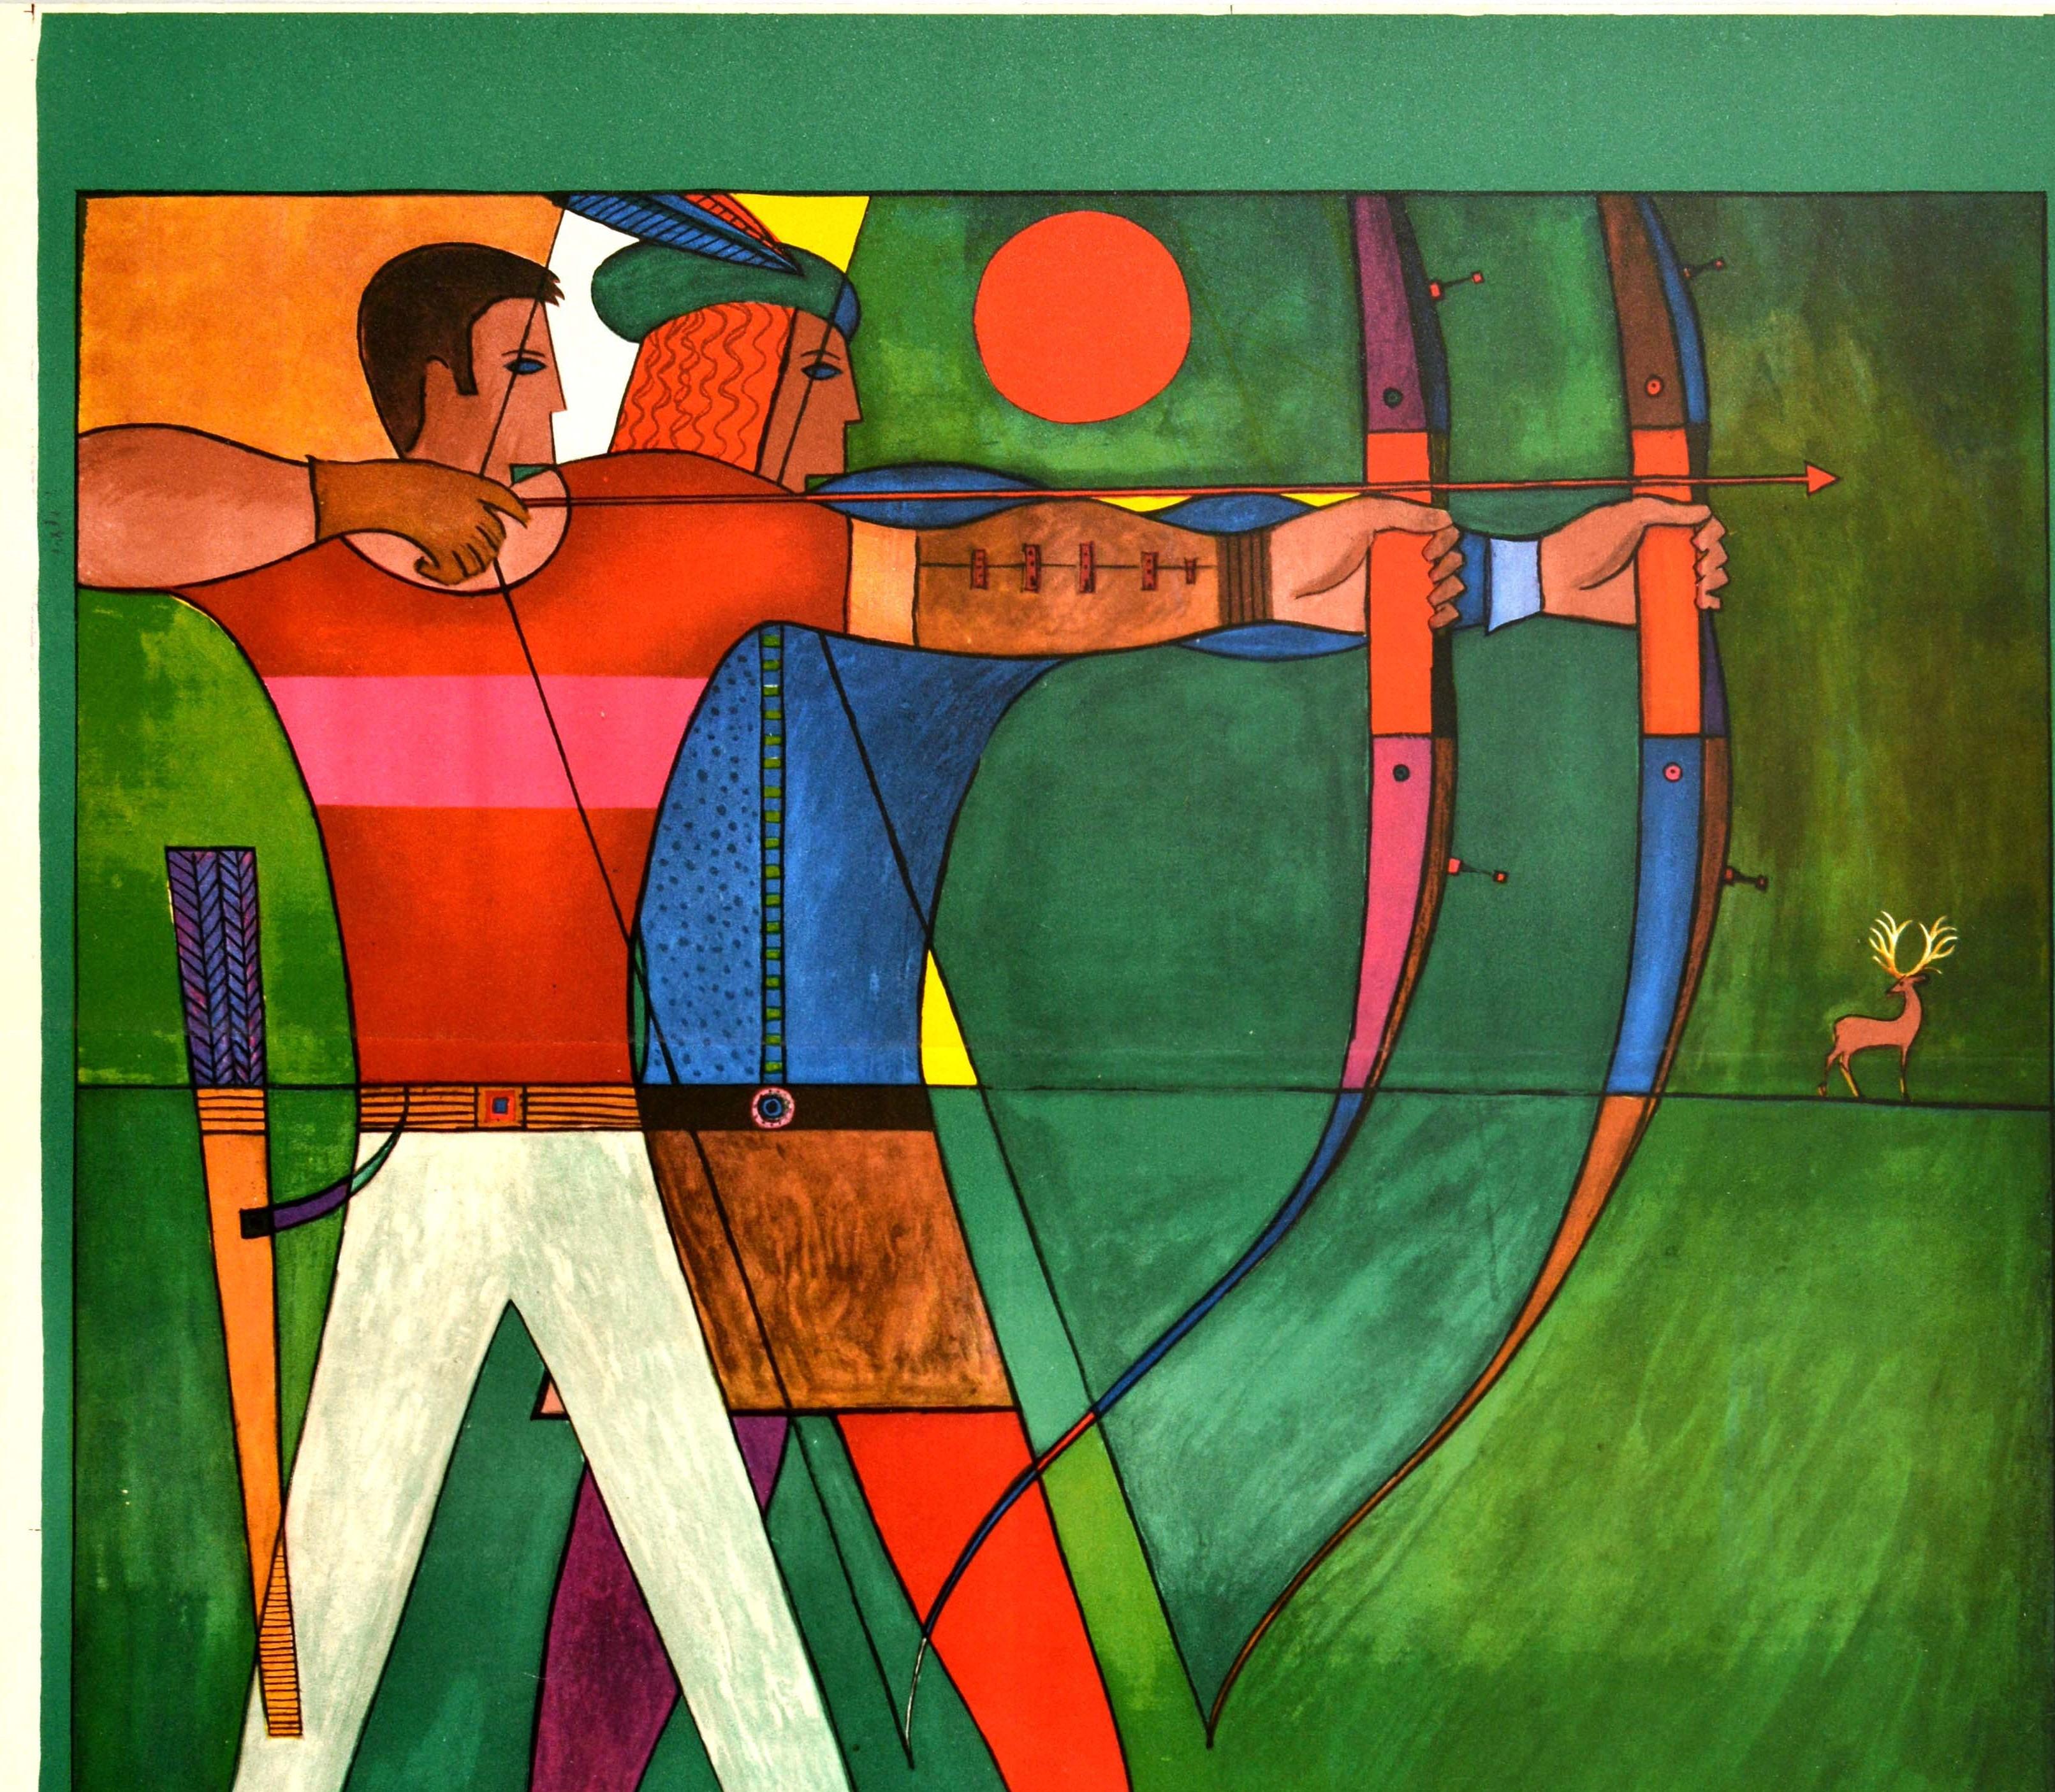 Affiche originale de sport soviétique d'époque - ? ??????? ? ? ? ??? Tir à l'arc - Ce superbe dessin représente deux archers avec des flèches dans leurs arcs sur un fond vert avec un soleil rouge derrière eux et un cerf aux bois dorés au loin.